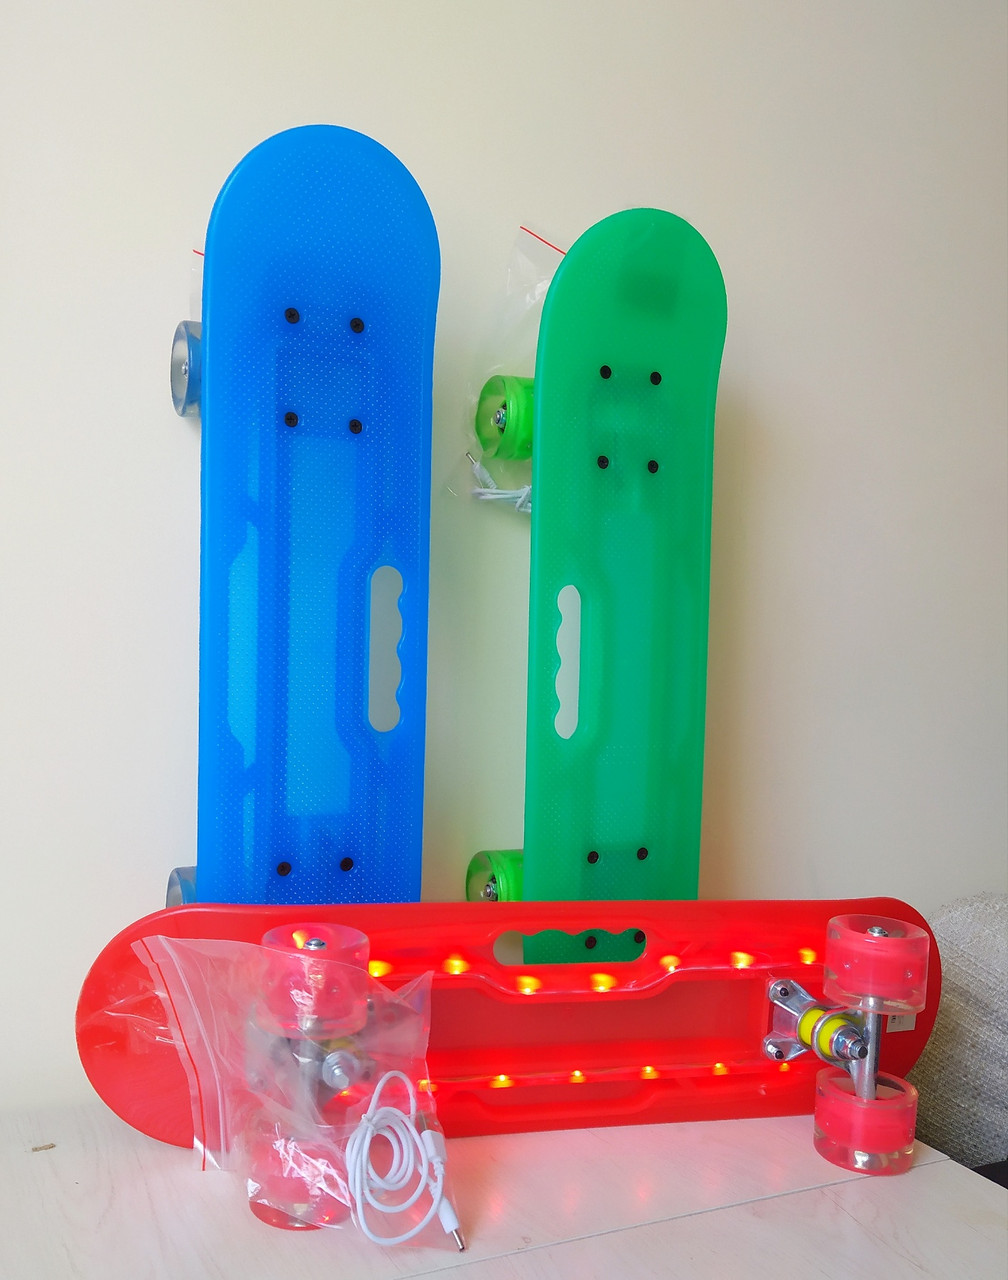 Светящийся Пенни борд ,скейтборд ( роликовая доска с подсветкой для детей и подростков ), фото 1